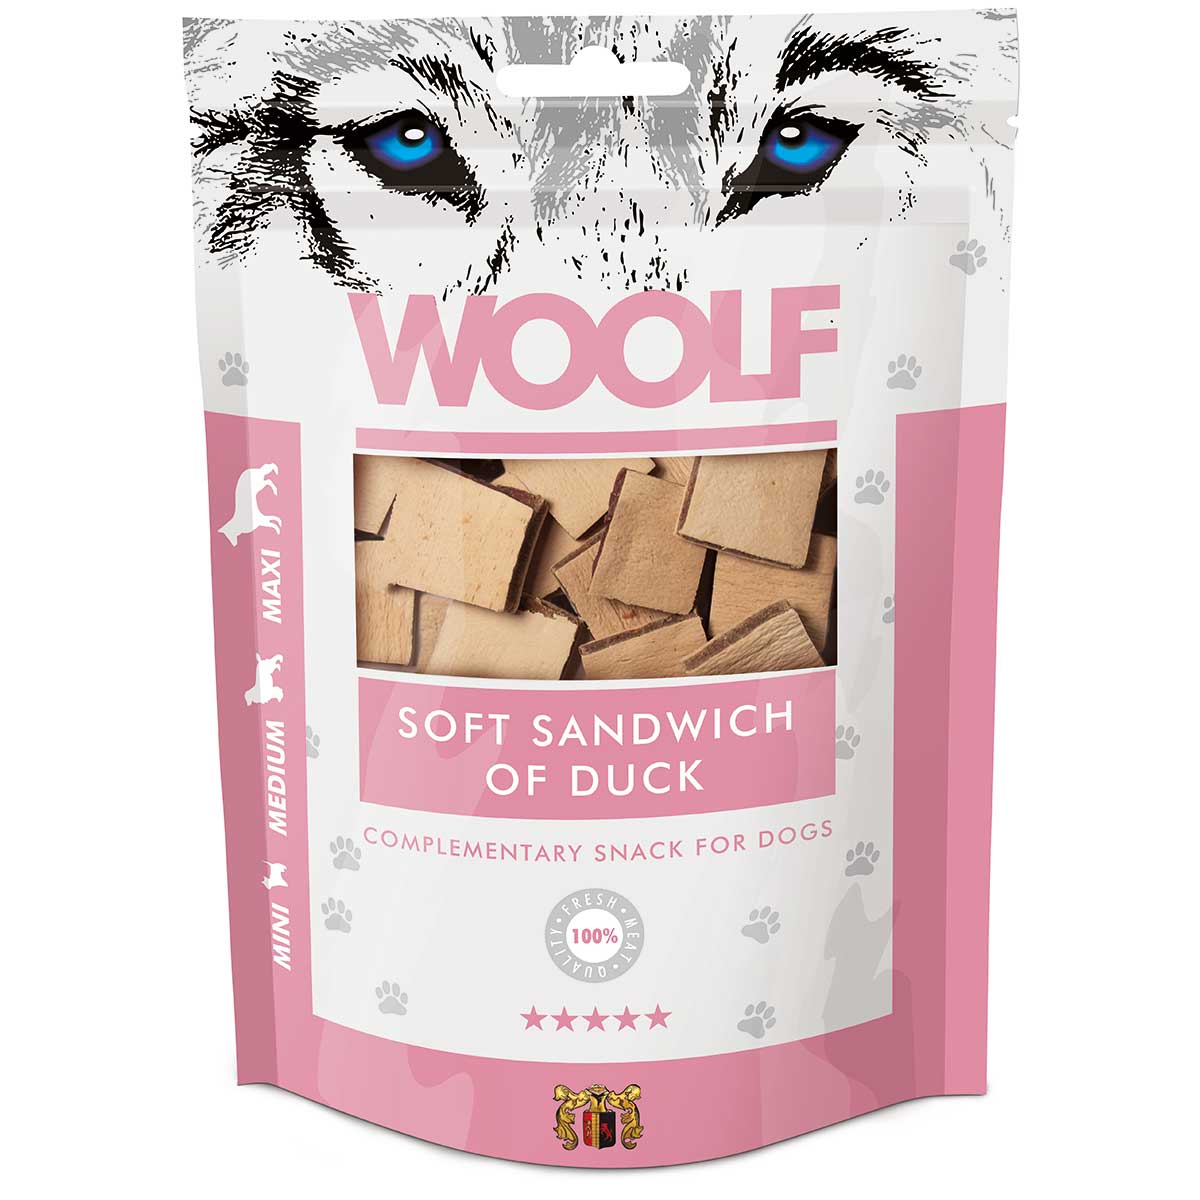 Woolf Dog Treat Tender Duck Sandwich